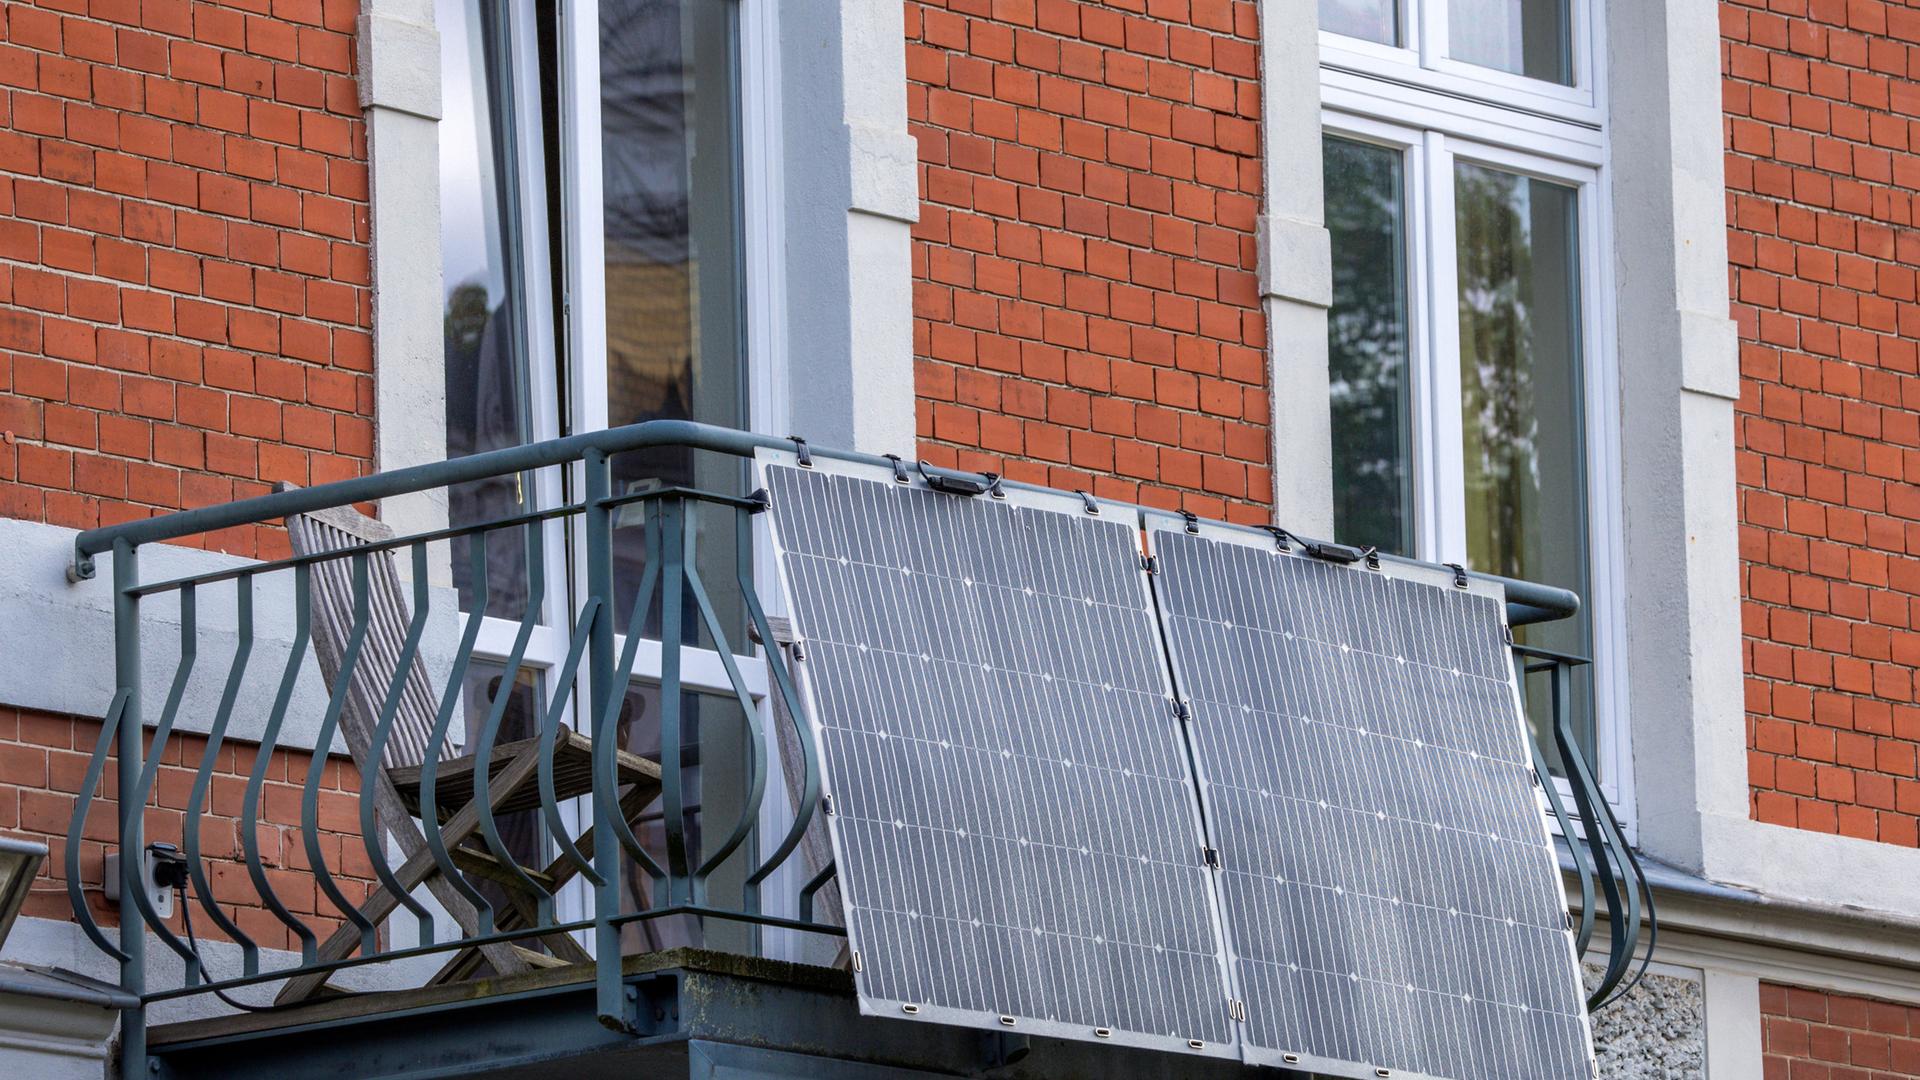 Solarmodule für ein sogenanntes Balkonkraftwerk hängen an einem Balkon in der Altstadt. Das Bundeskabinett will heute Erleichterungen von Solaranlagen beschlieÃen.